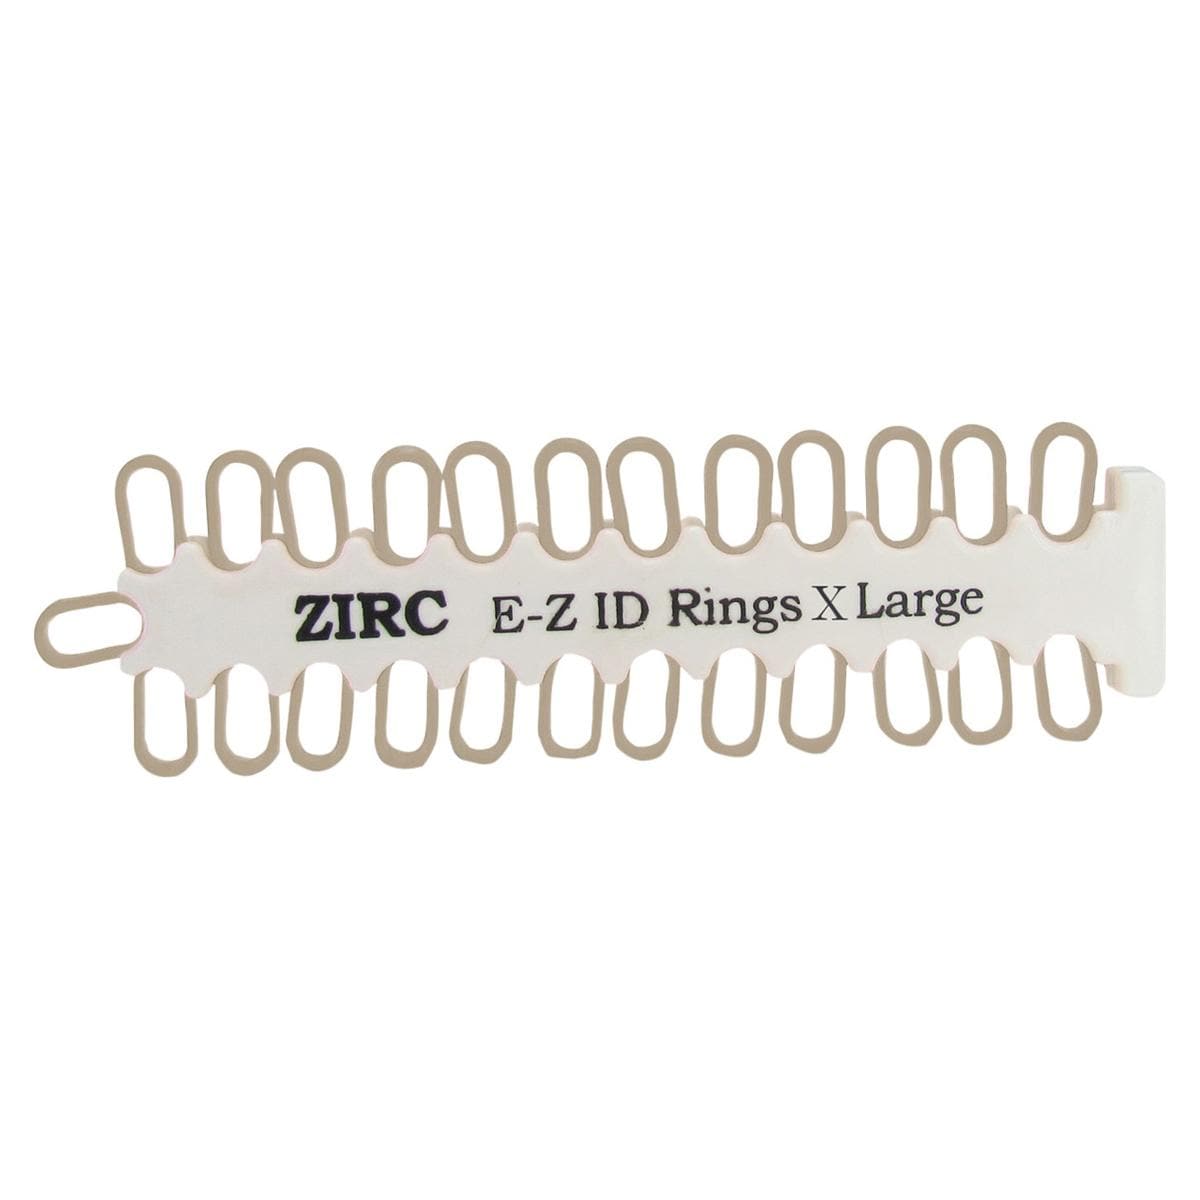 E-Z ID anneaux de marquage Extra Large  9 mm - dispenser - beige 70Z00G